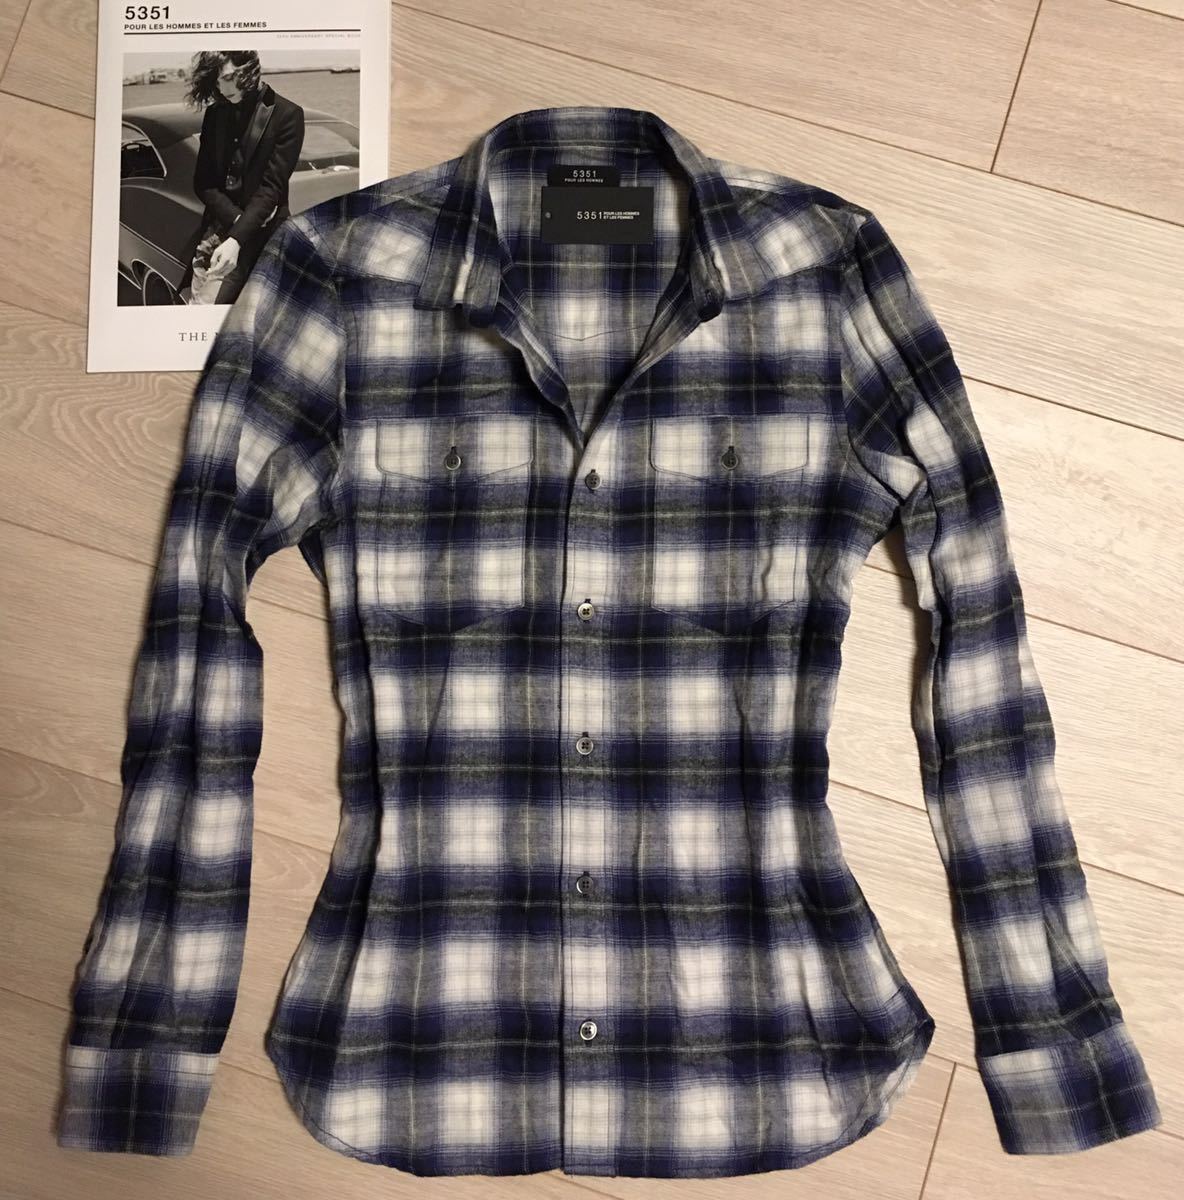 本物の 5351プールオム最高級ブラストチェックシャツネイビー極美品 LAURENT SAINT wjk SHELLAC Hommes les  5351pour トップス